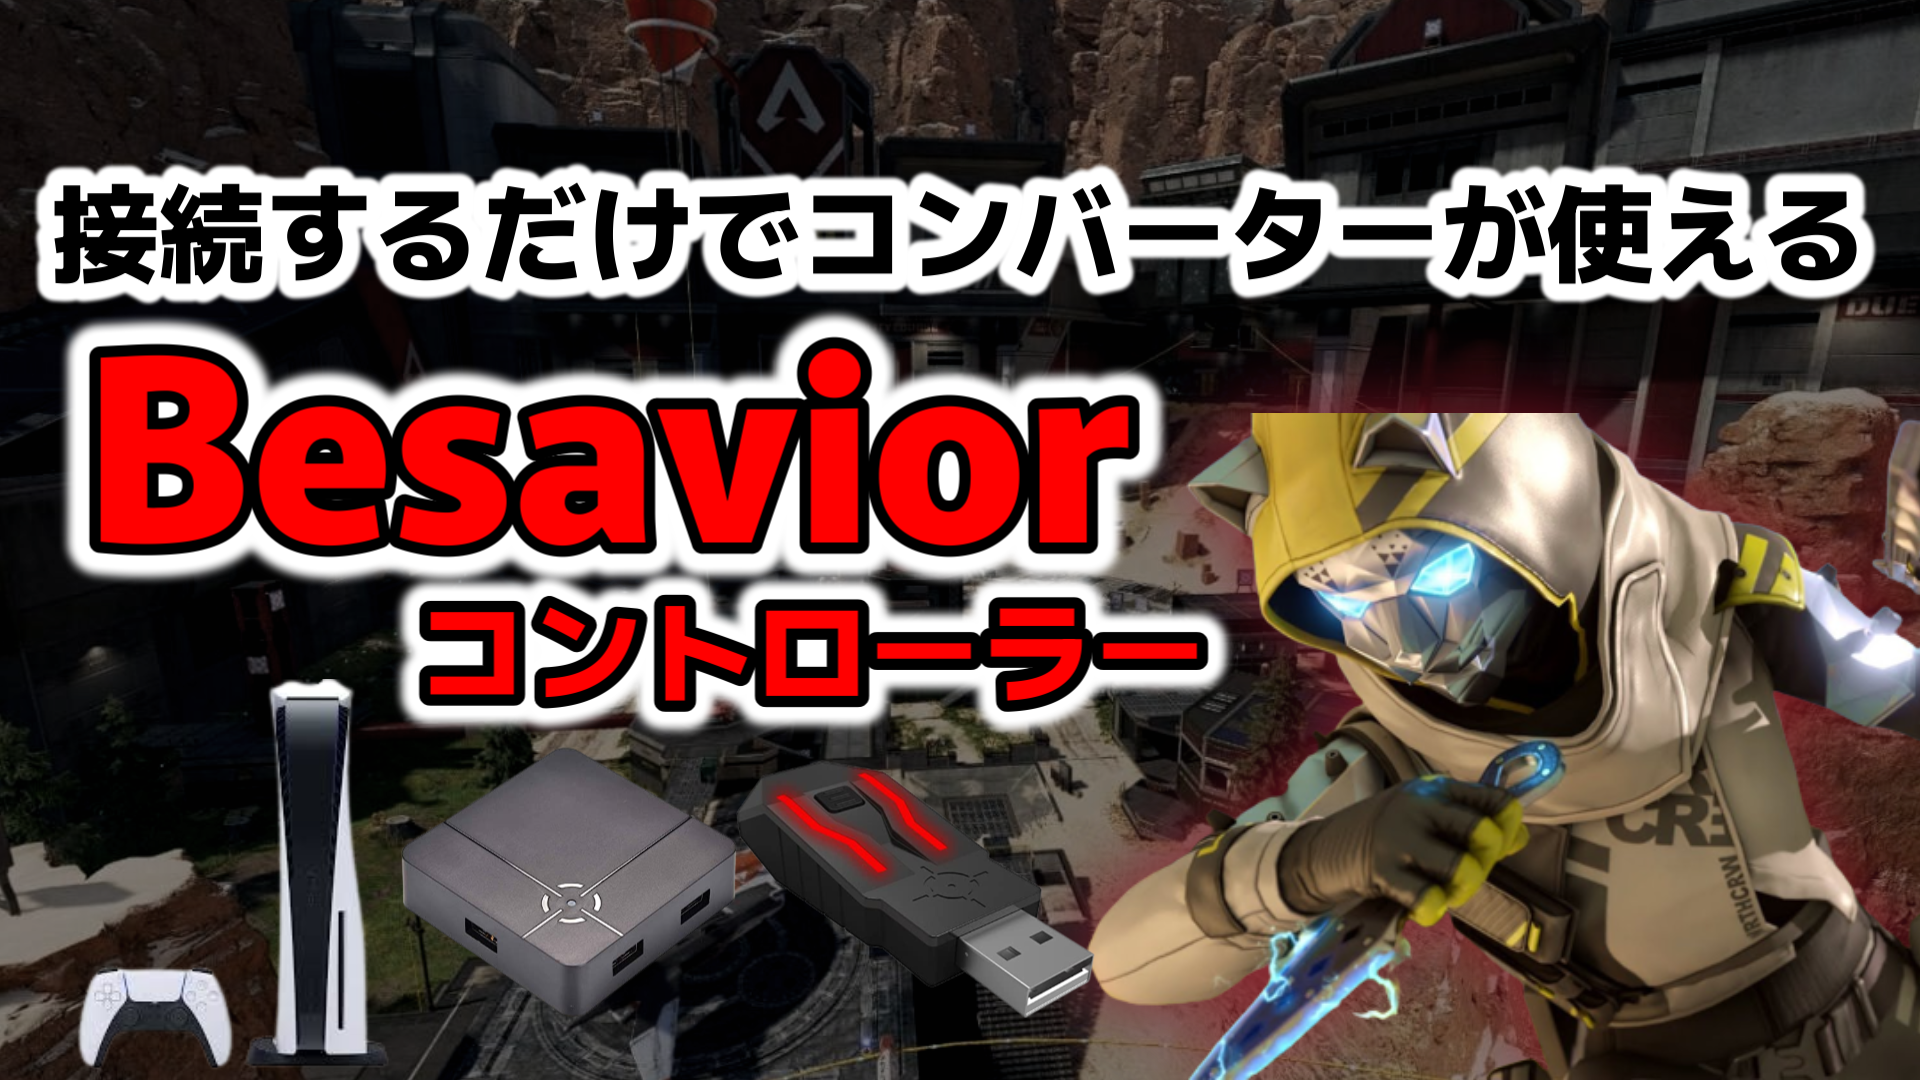 【新商品Besavior】接続するだけでPS5版ゲームをコンバーターで 